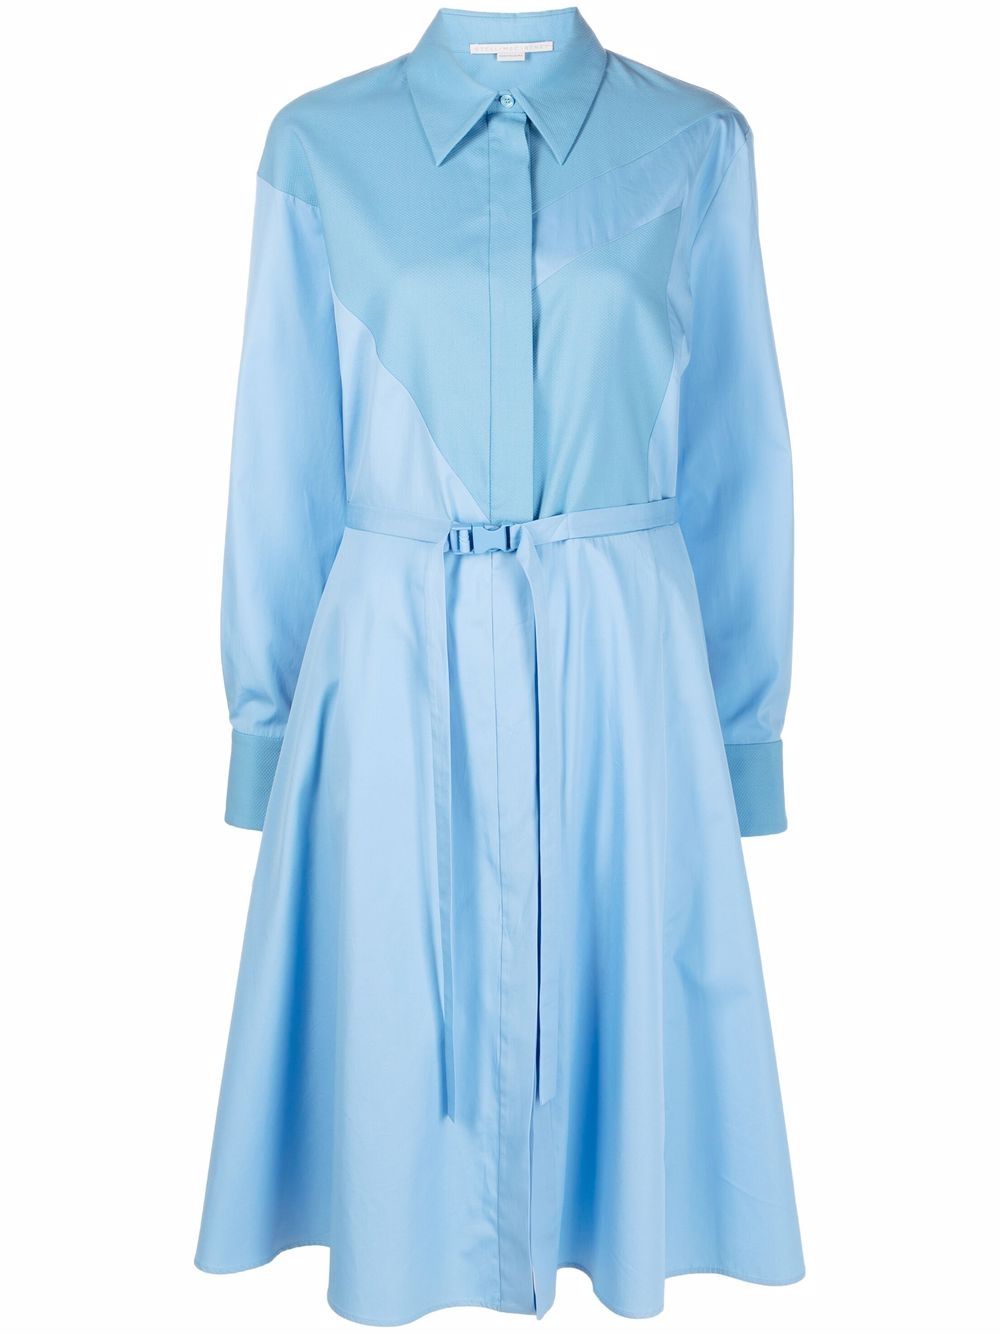 Stella McCartney Mia Panelled Shirt Dress - Farfetch